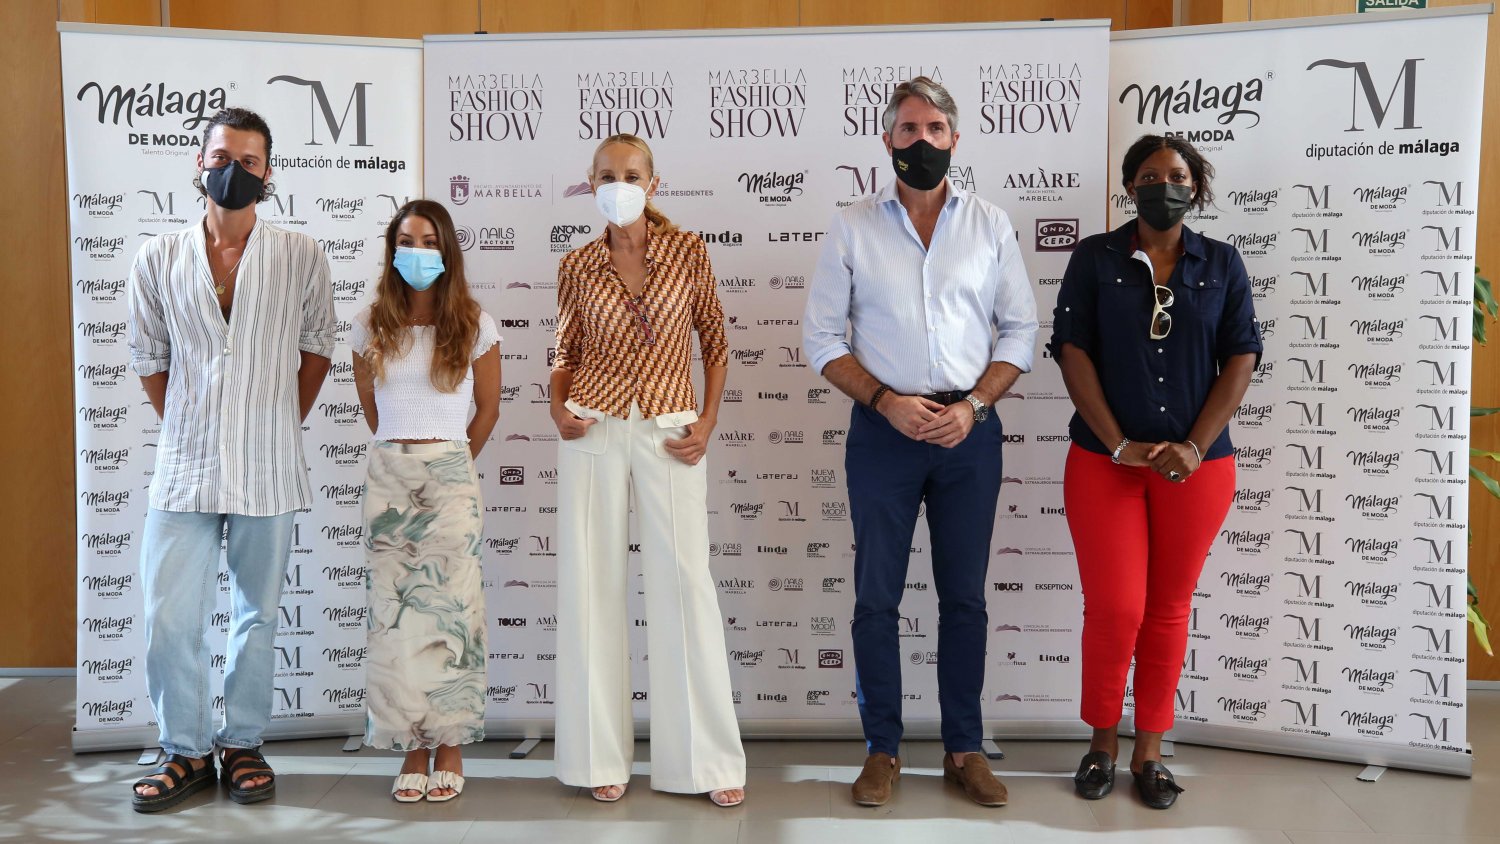 'Málaga de Moda' impulsa la IV edición de la 'Marbella Fashion Show' el 10 y 11 de septiembre